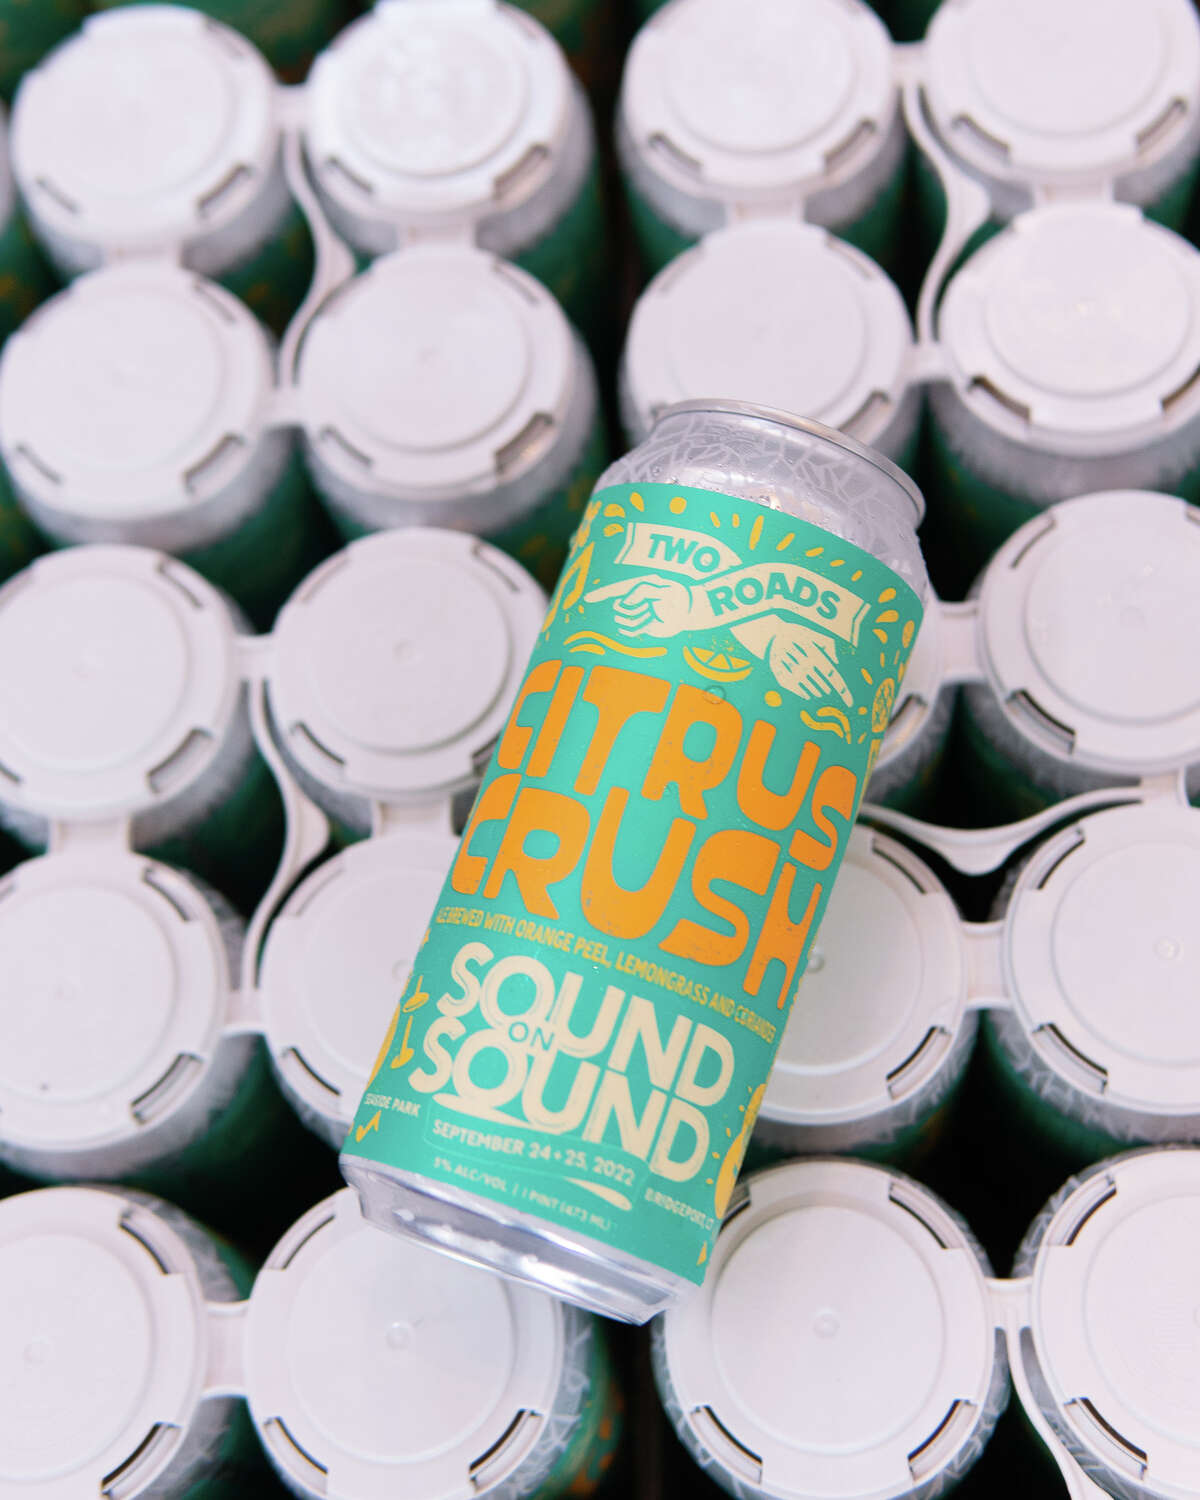 Citrus Crush es el resultado de una asociación entre Sound On Sound y Two Roads Brewing.